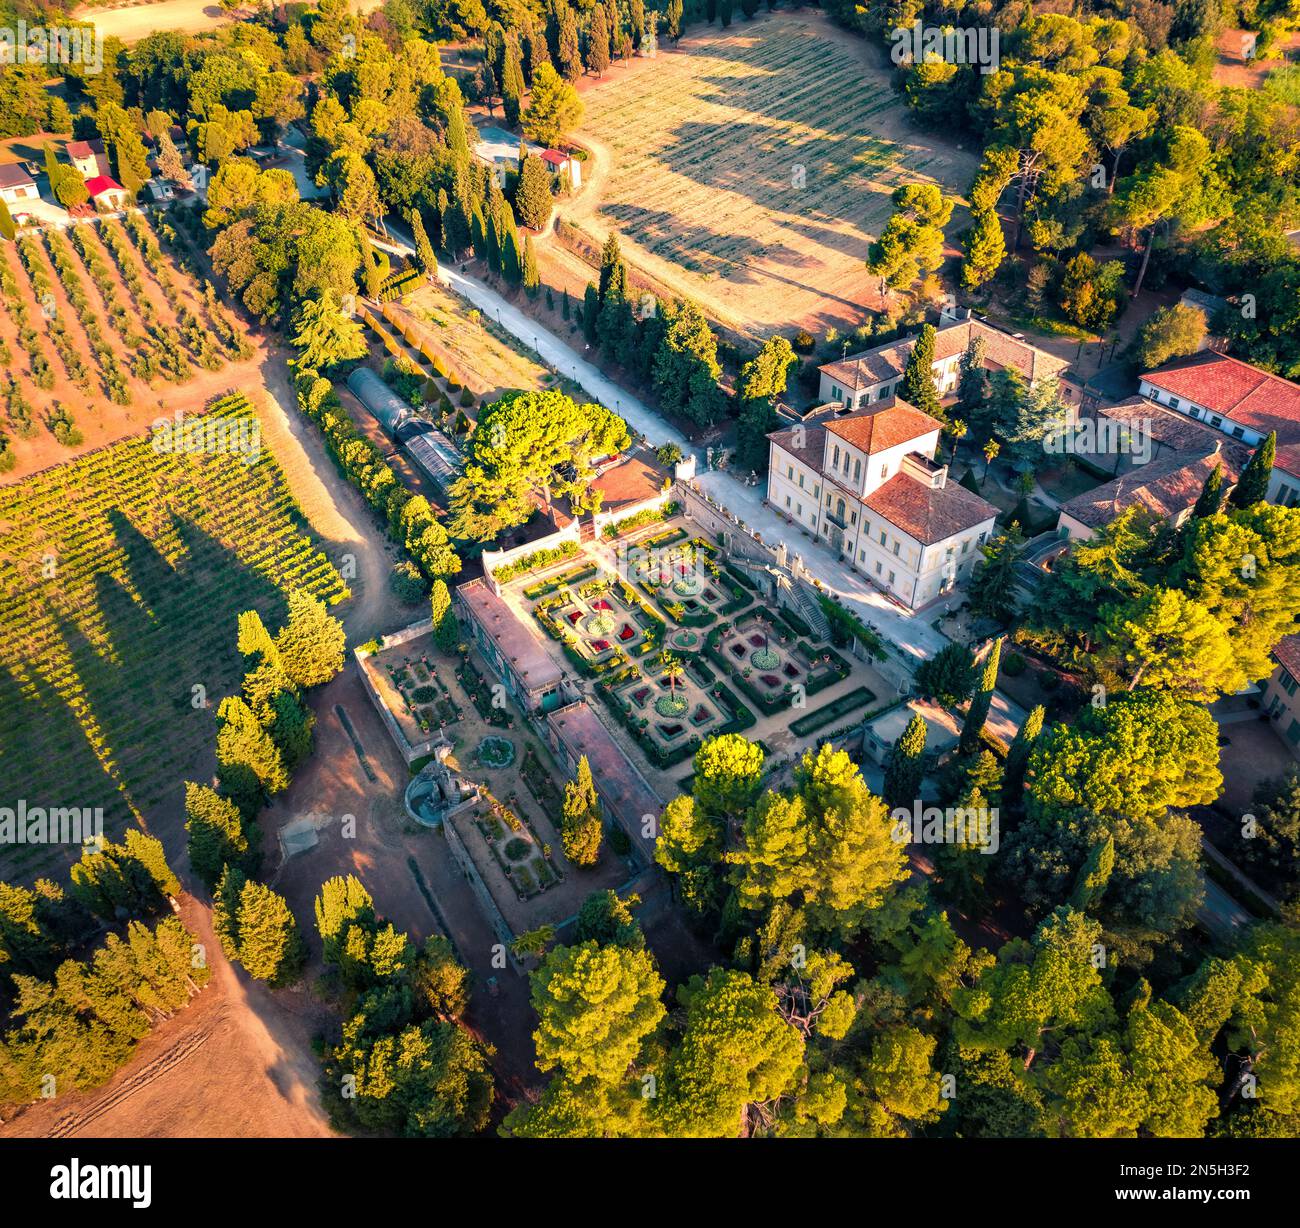 Vue spectaculaire de l'été depuis le drone volant de la Villa Caprile. Scène matinale verte de la campagne italienne, province de Pesaro et Urbino, Italie, Europe. Banque D'Images